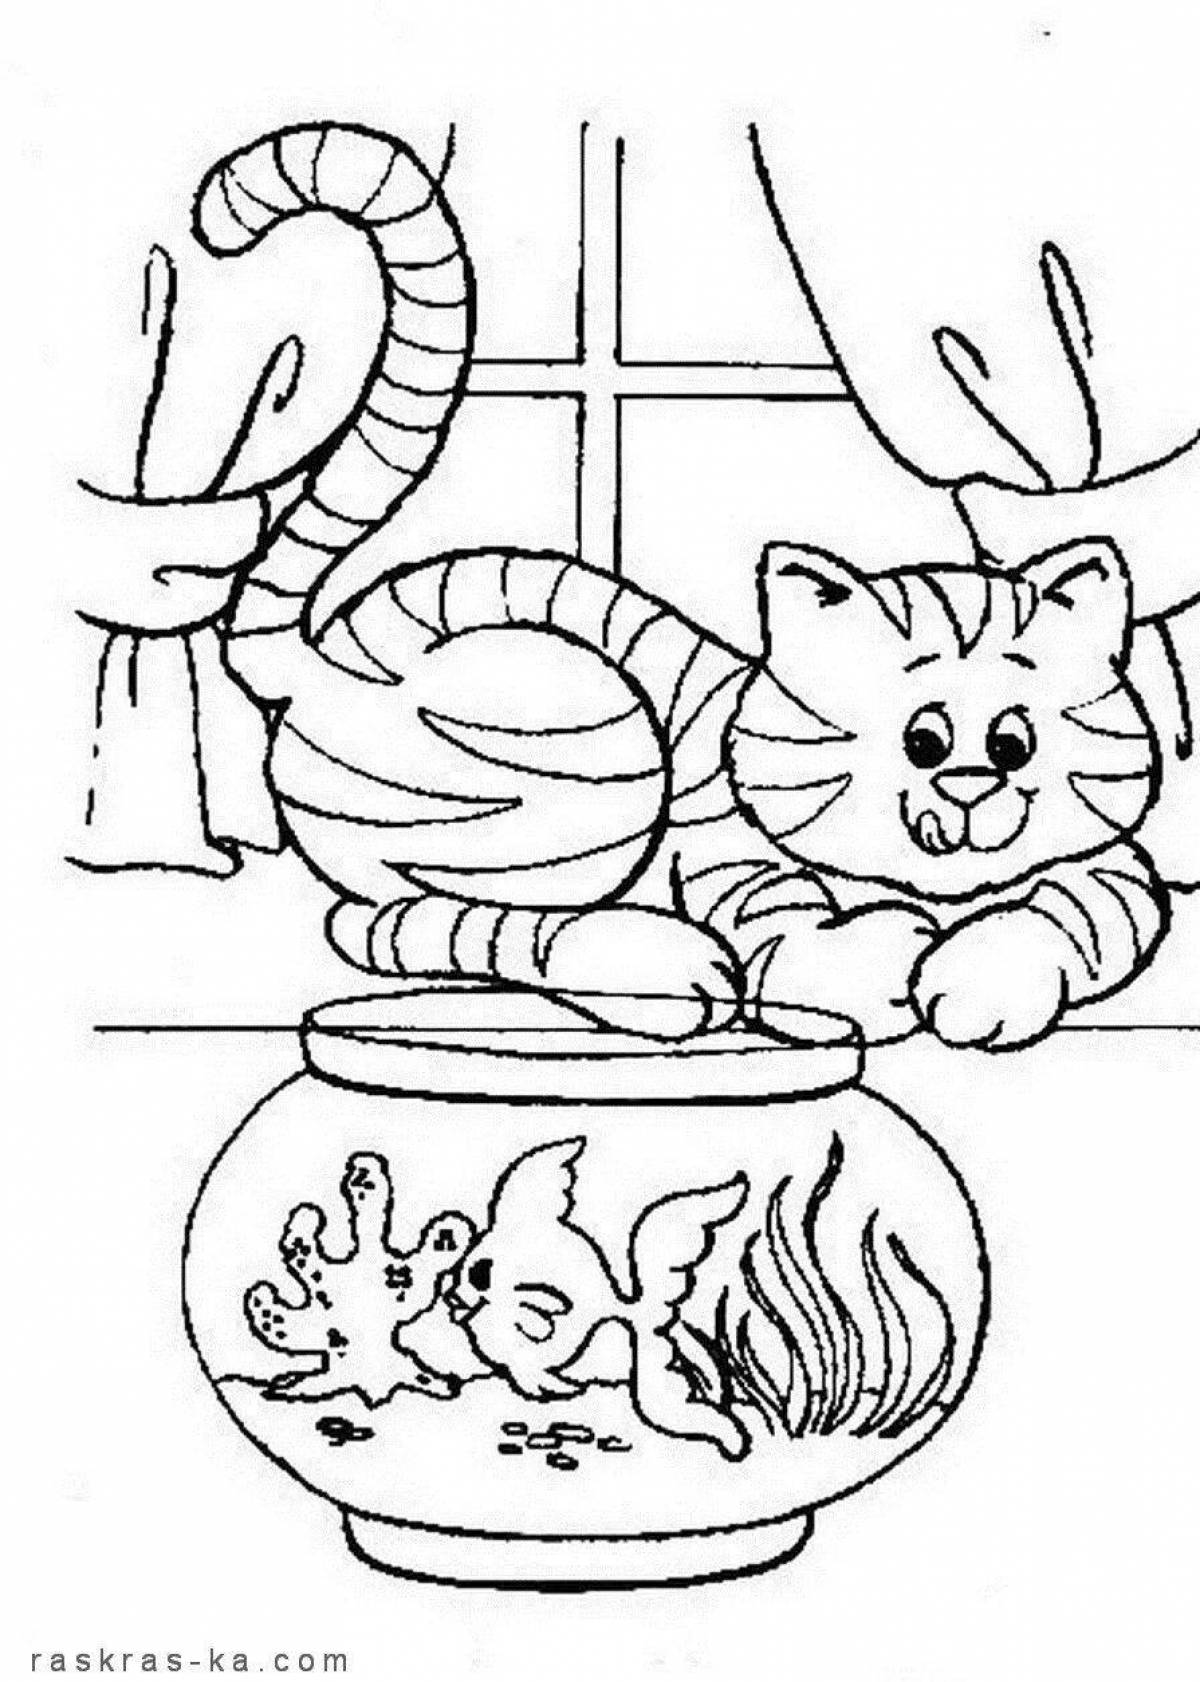 5 кошек раскраска. Кошки. Раскраска. Раскраска. Котики. Кошка раскраска для детей. Раскраска кошка с котятами.